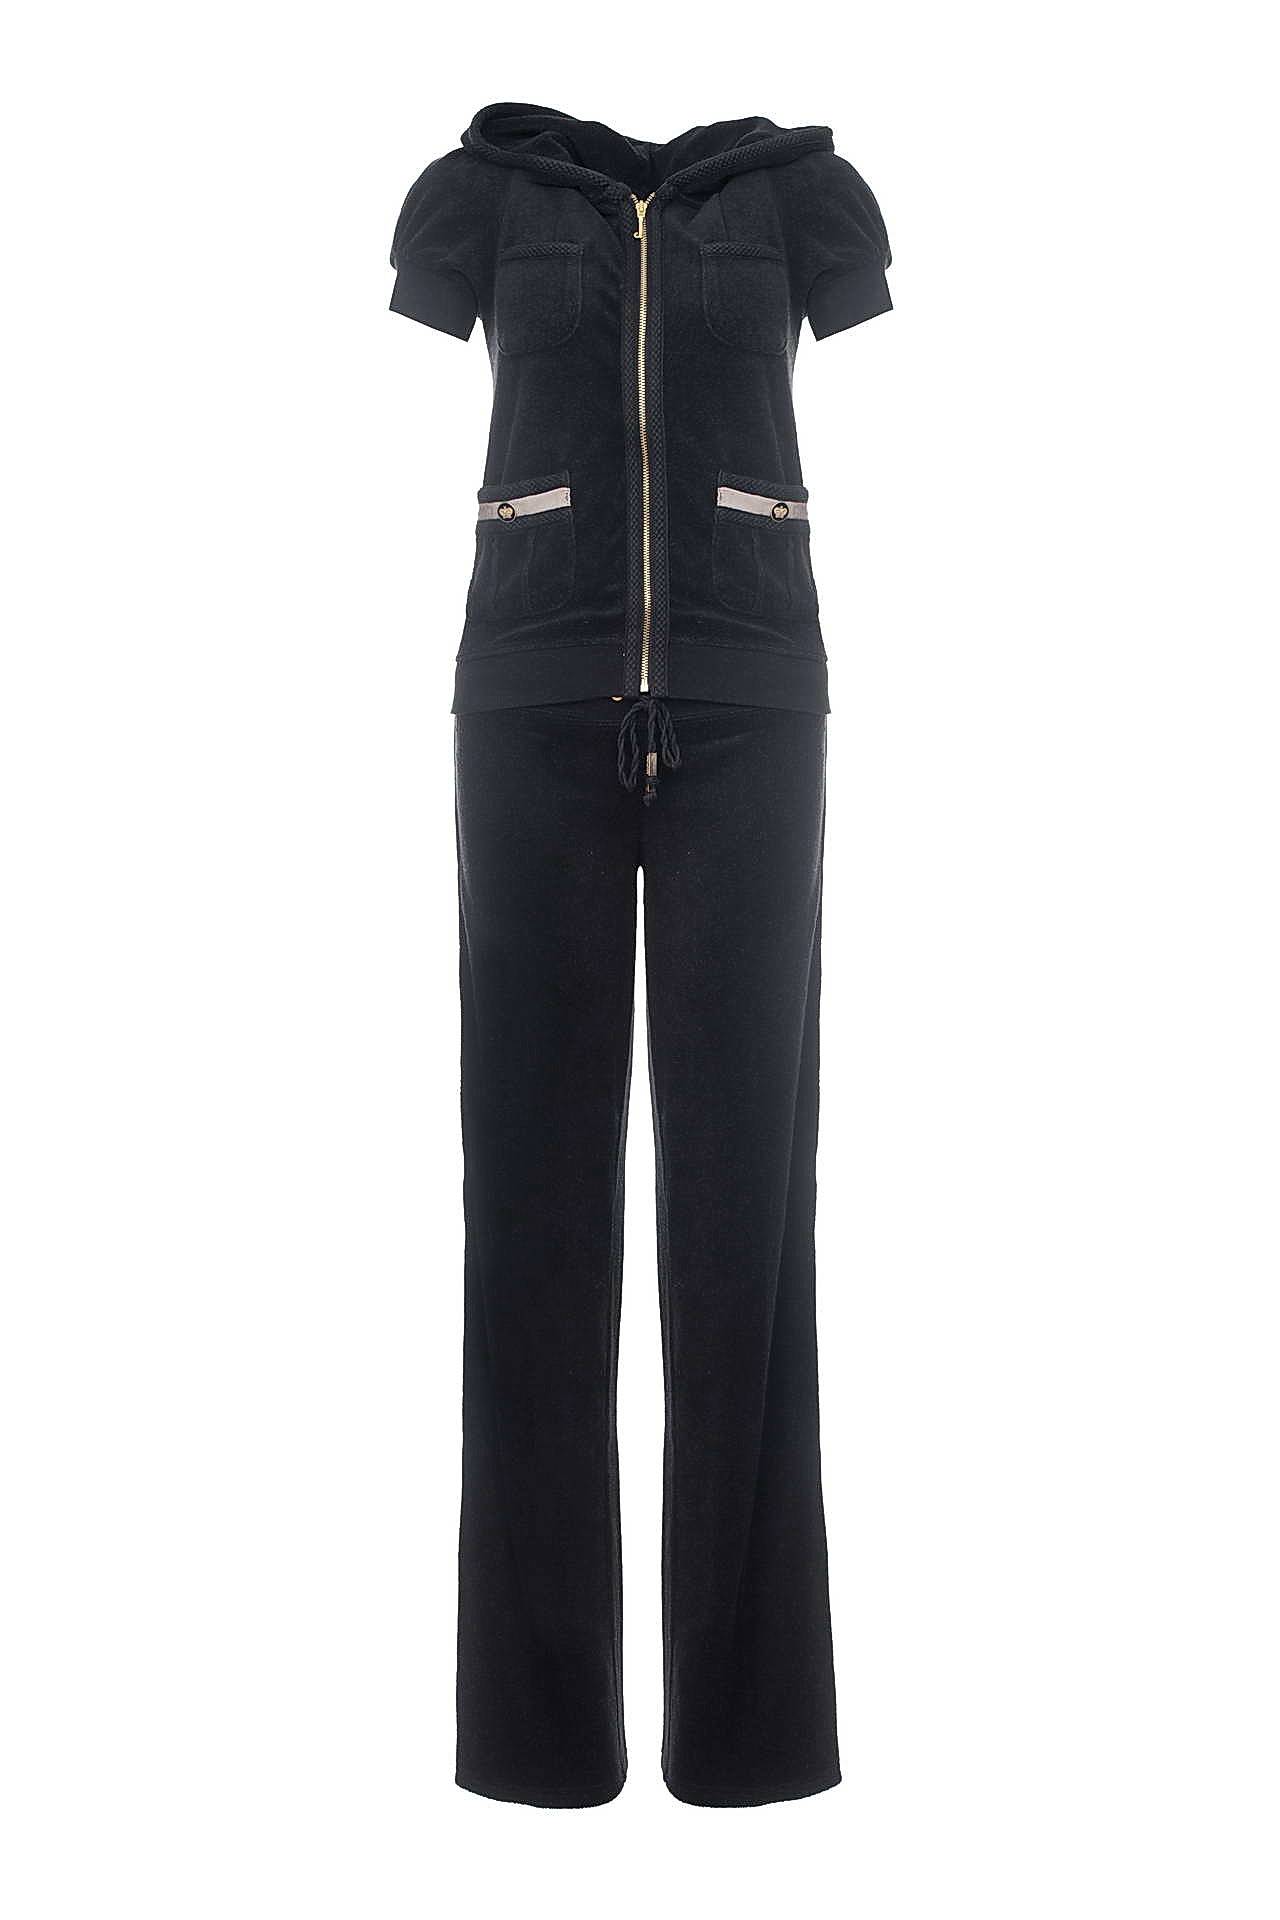 Одежда женская Костюм JUICY COUTURE (JGMU3194/5065/29). Купить за 11450 руб.